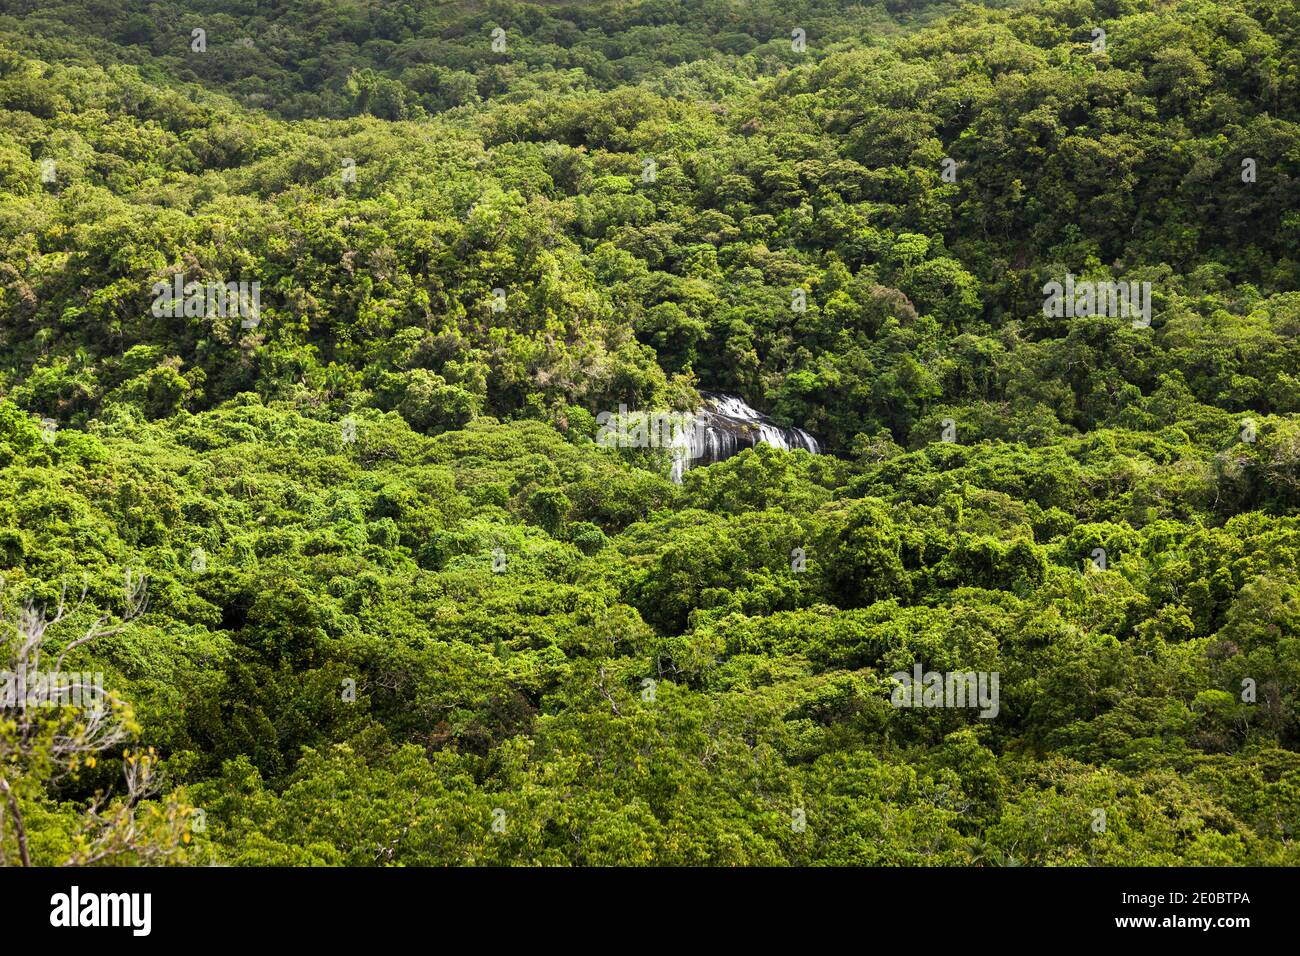 Vista a distanza della cascata di Ngardmau e profondo jngule della montagna foresta pluviale, Ngardmau, Isola di Babeldaob, Palau, Micronesia, Oceania Foto Stock